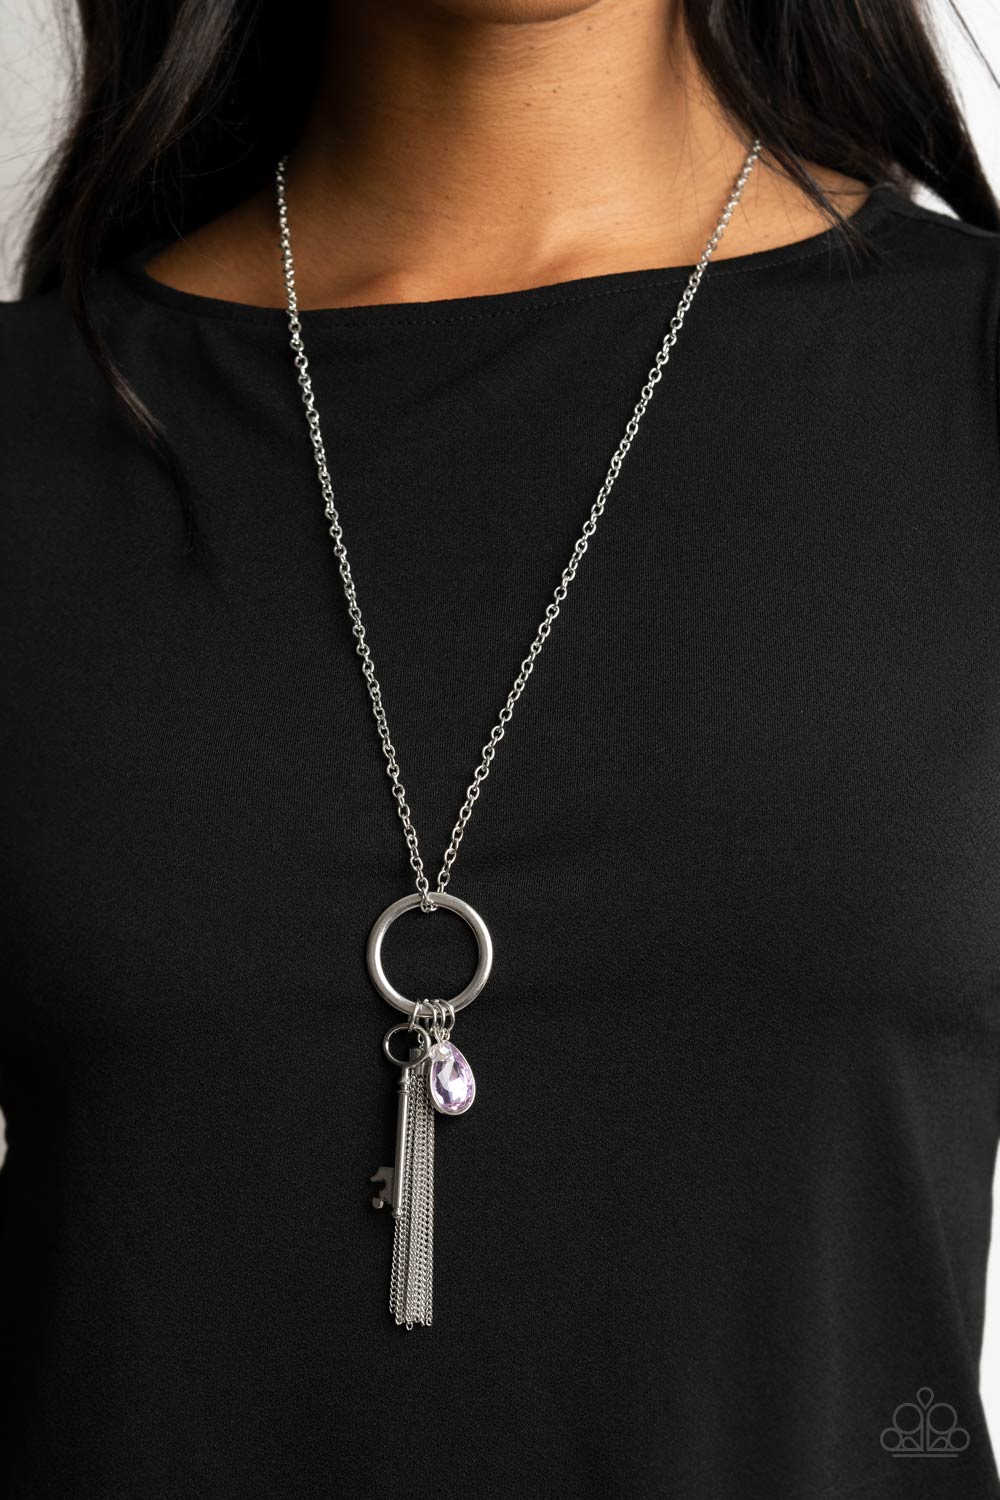 Unlock Your Sparkle - Purple Necklace Set - Princess Glam Shop